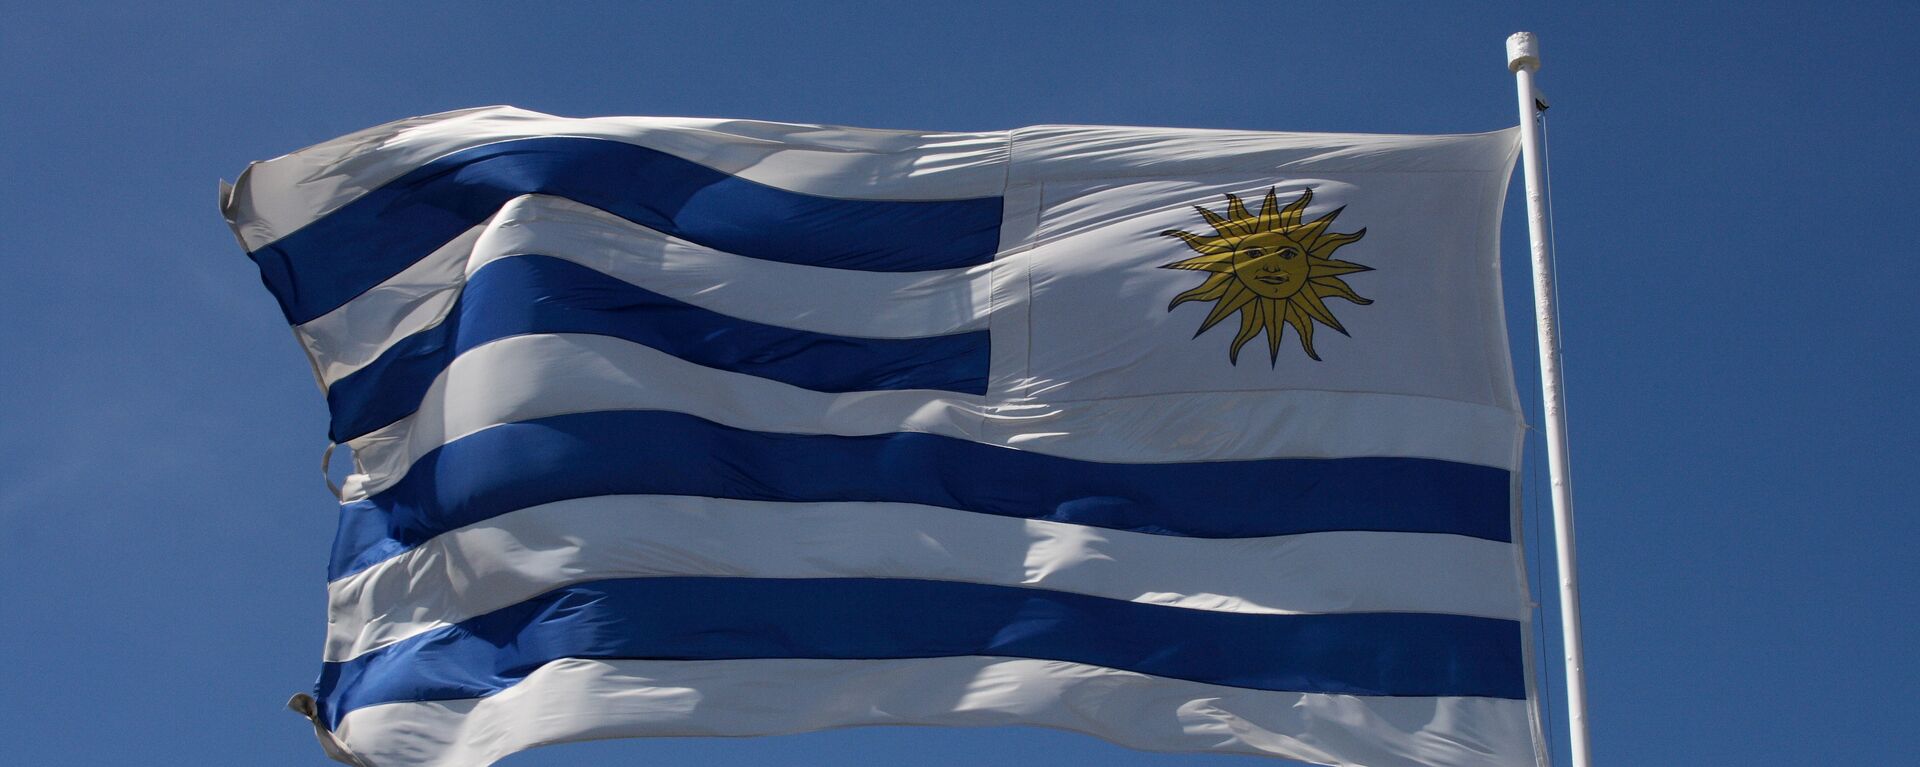 La bandera de Uruguay - Sputnik Mundo, 1920, 26.01.2021